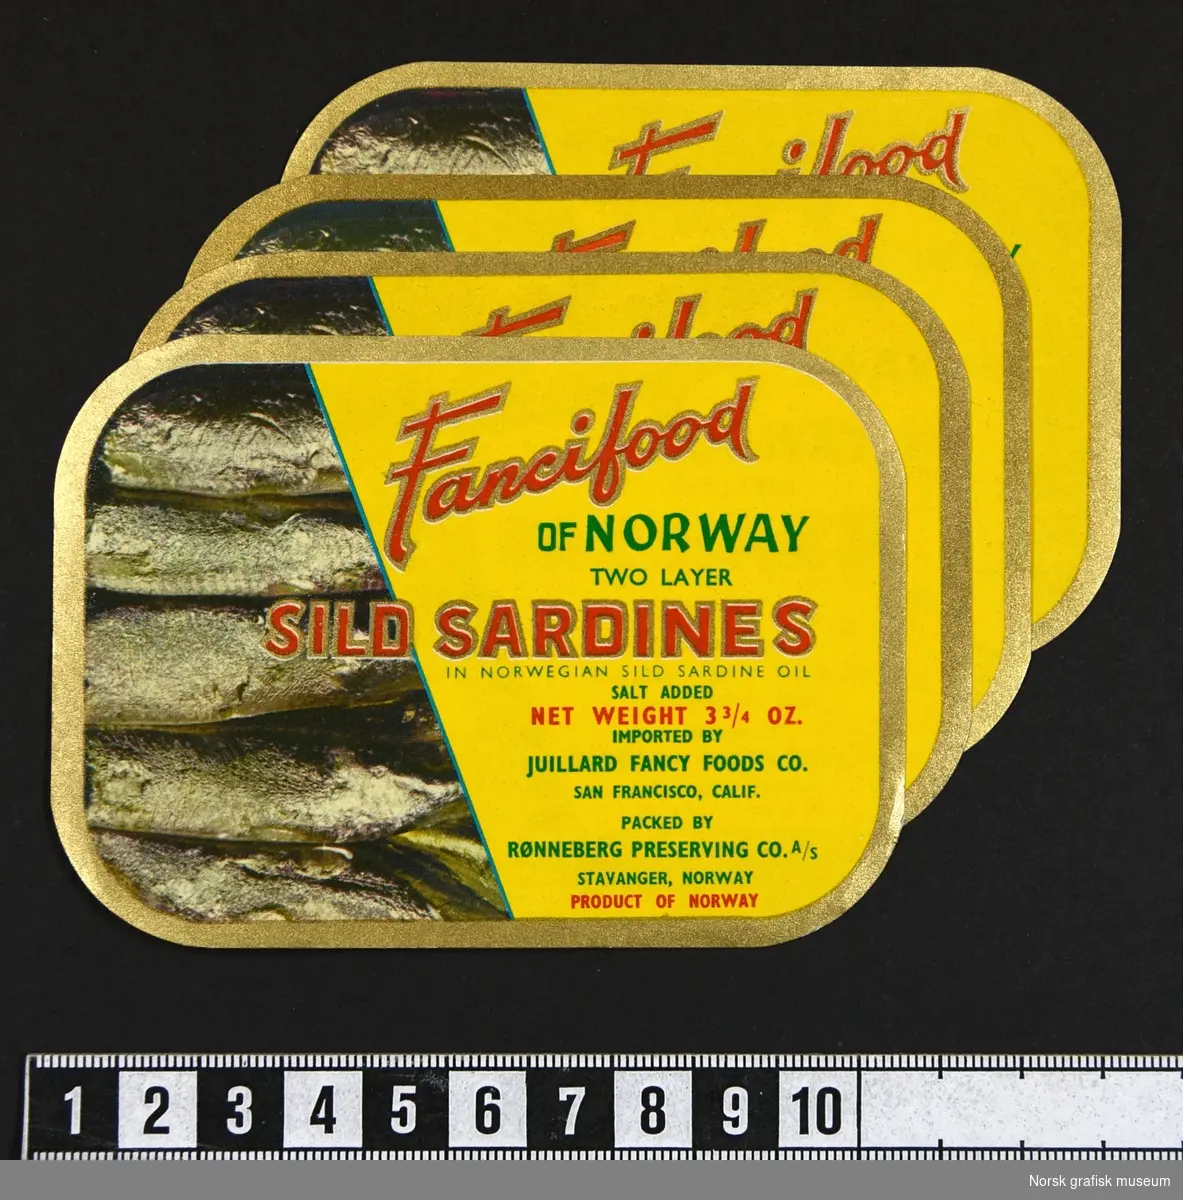 Etiketter med gul brakgrunn, bord i gull og tekst i rødt og grønt. Venstre side viser innholdet i boksen, sardiner.

"Sild sardines in Norwegian sild sardine oil"